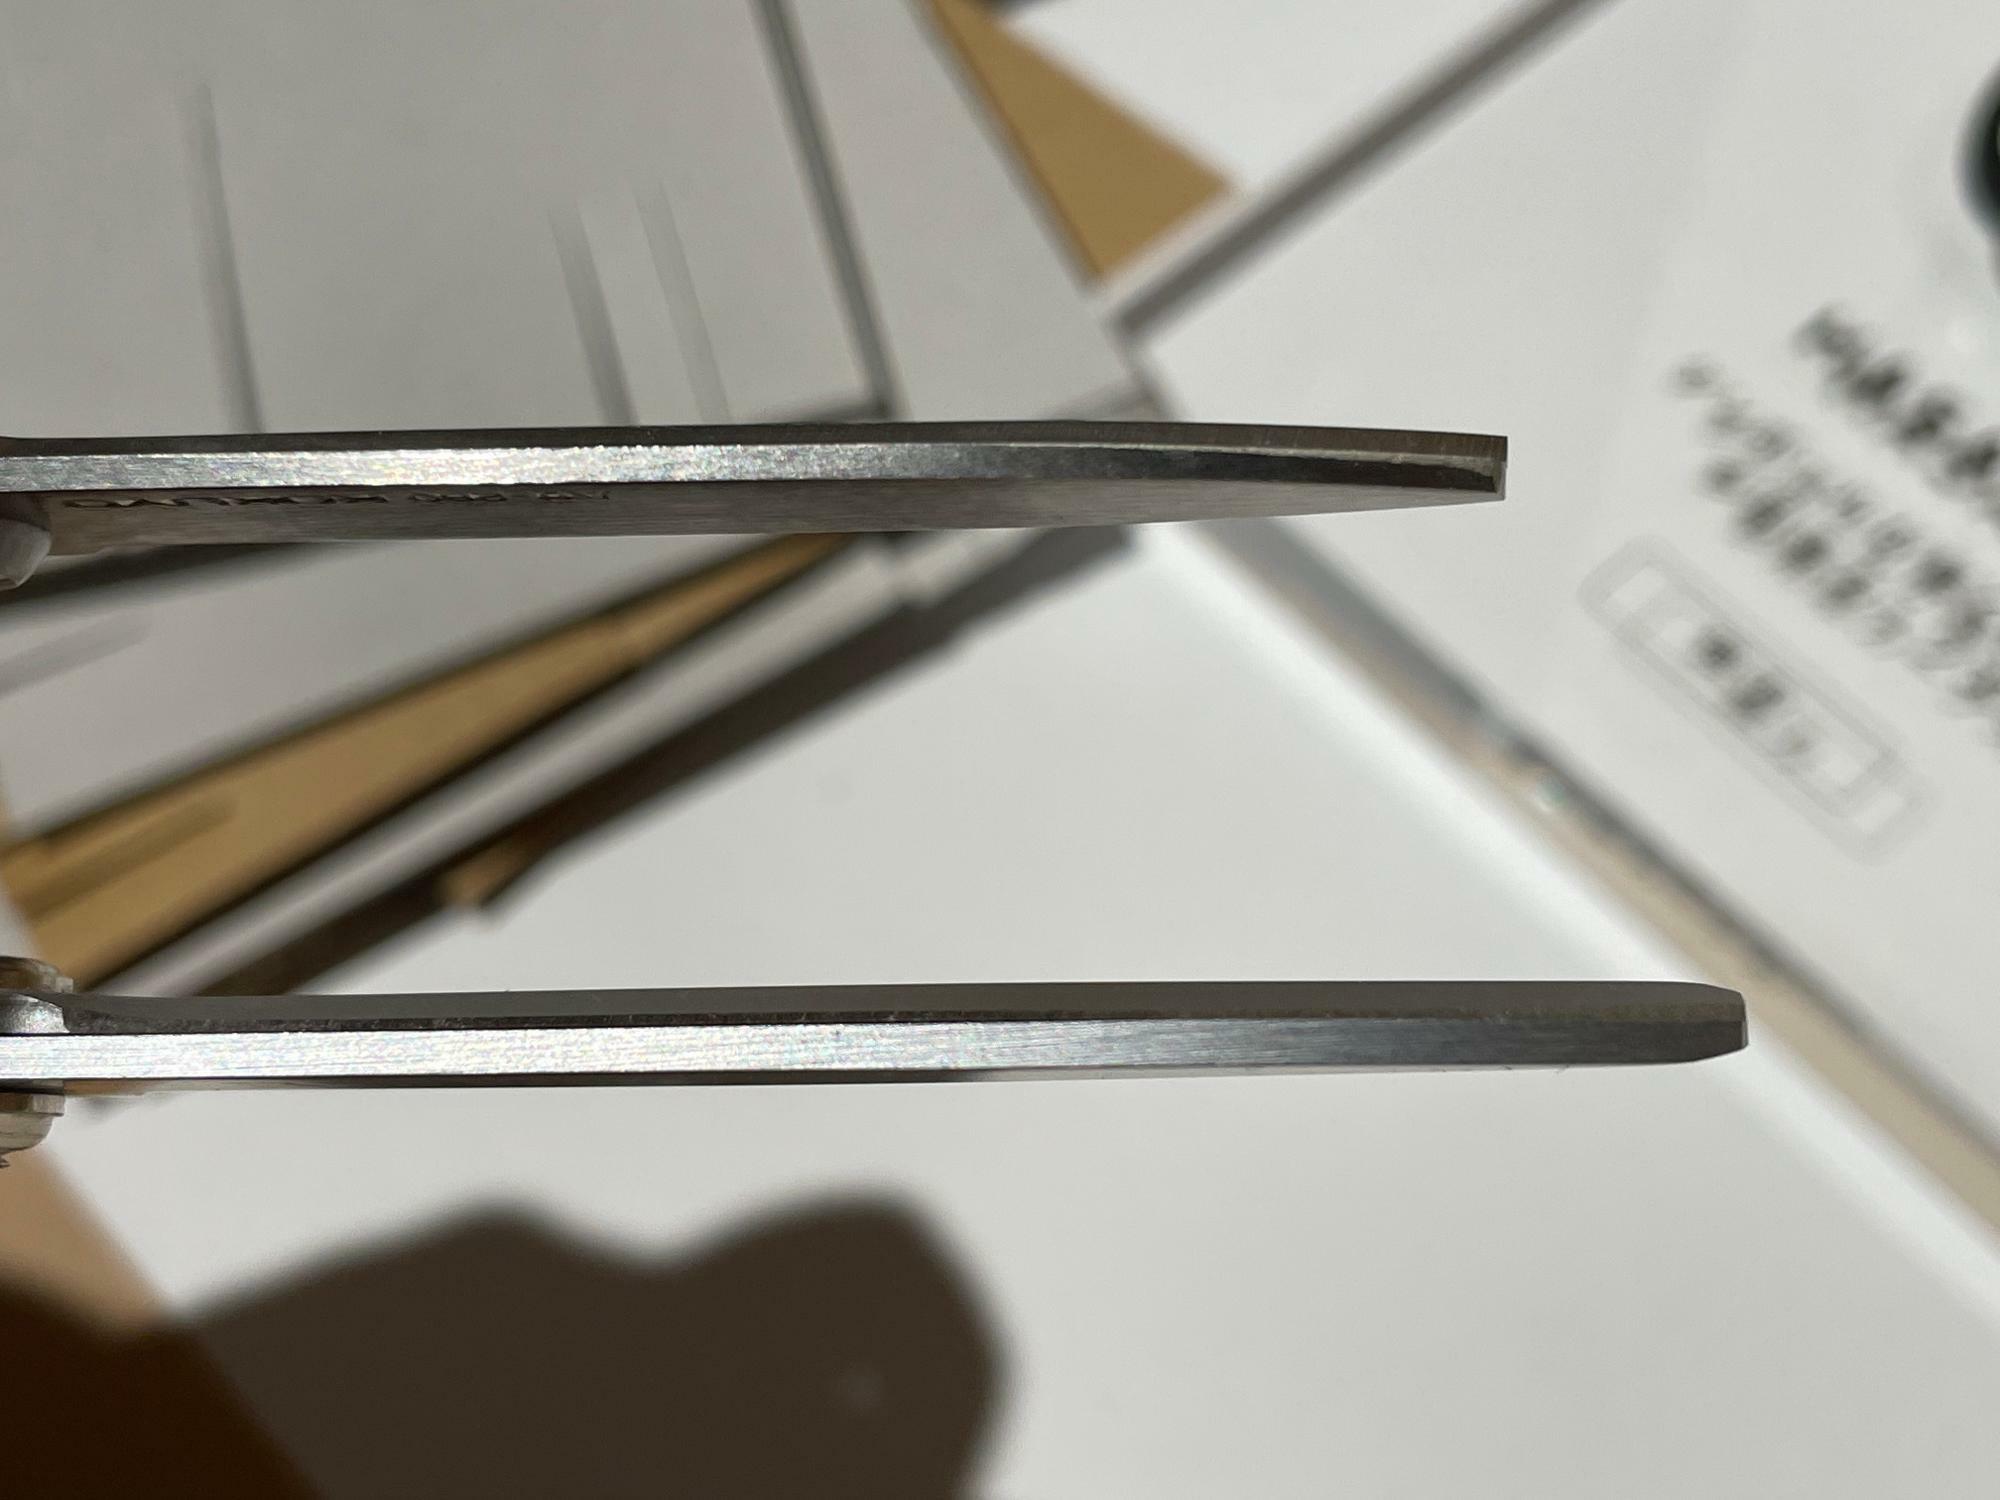 HASA-001の刃と従来製品の刃を比べたところ。明らかに厚みがある。